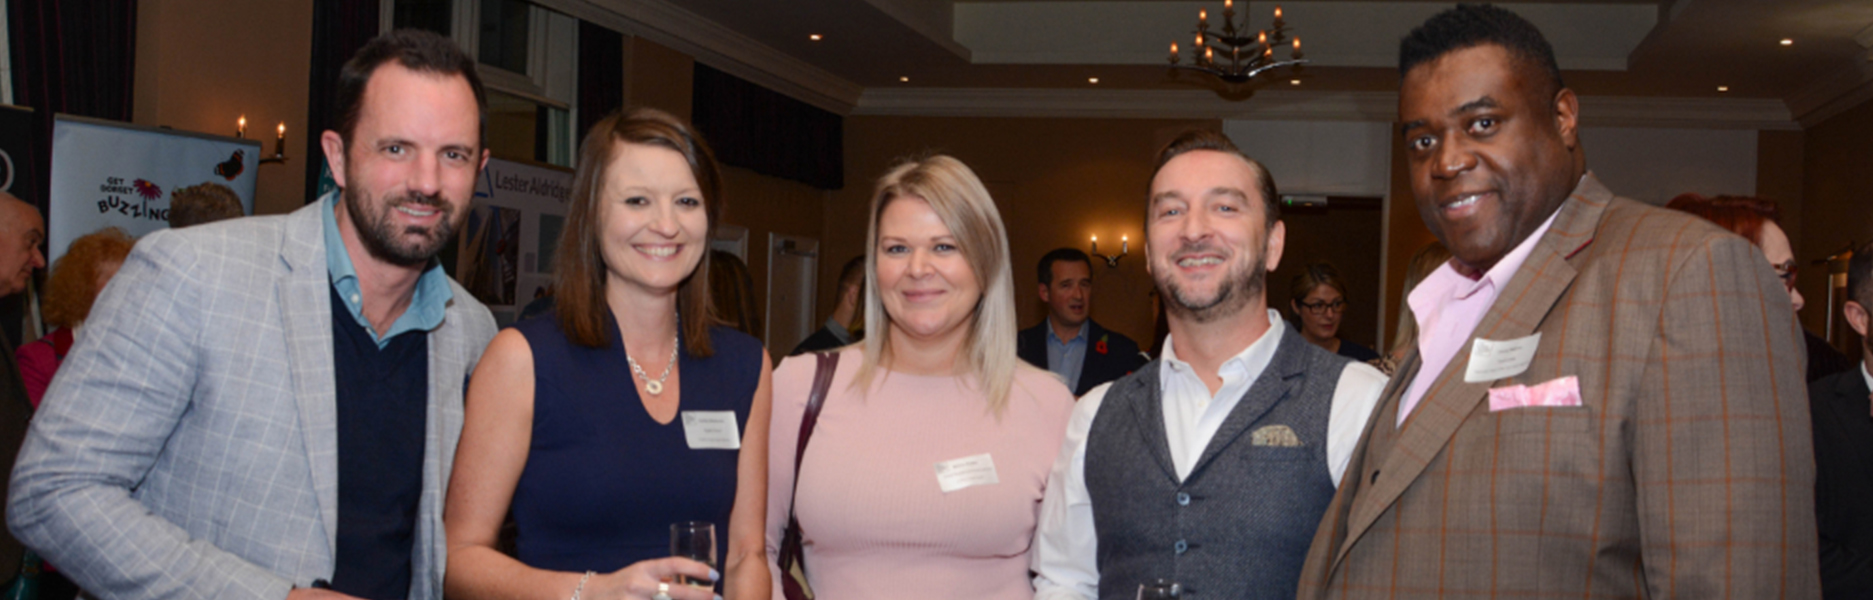 Digital Storm attend Dorset Business Awards 2019 ‘Meet the Finalists’ reception